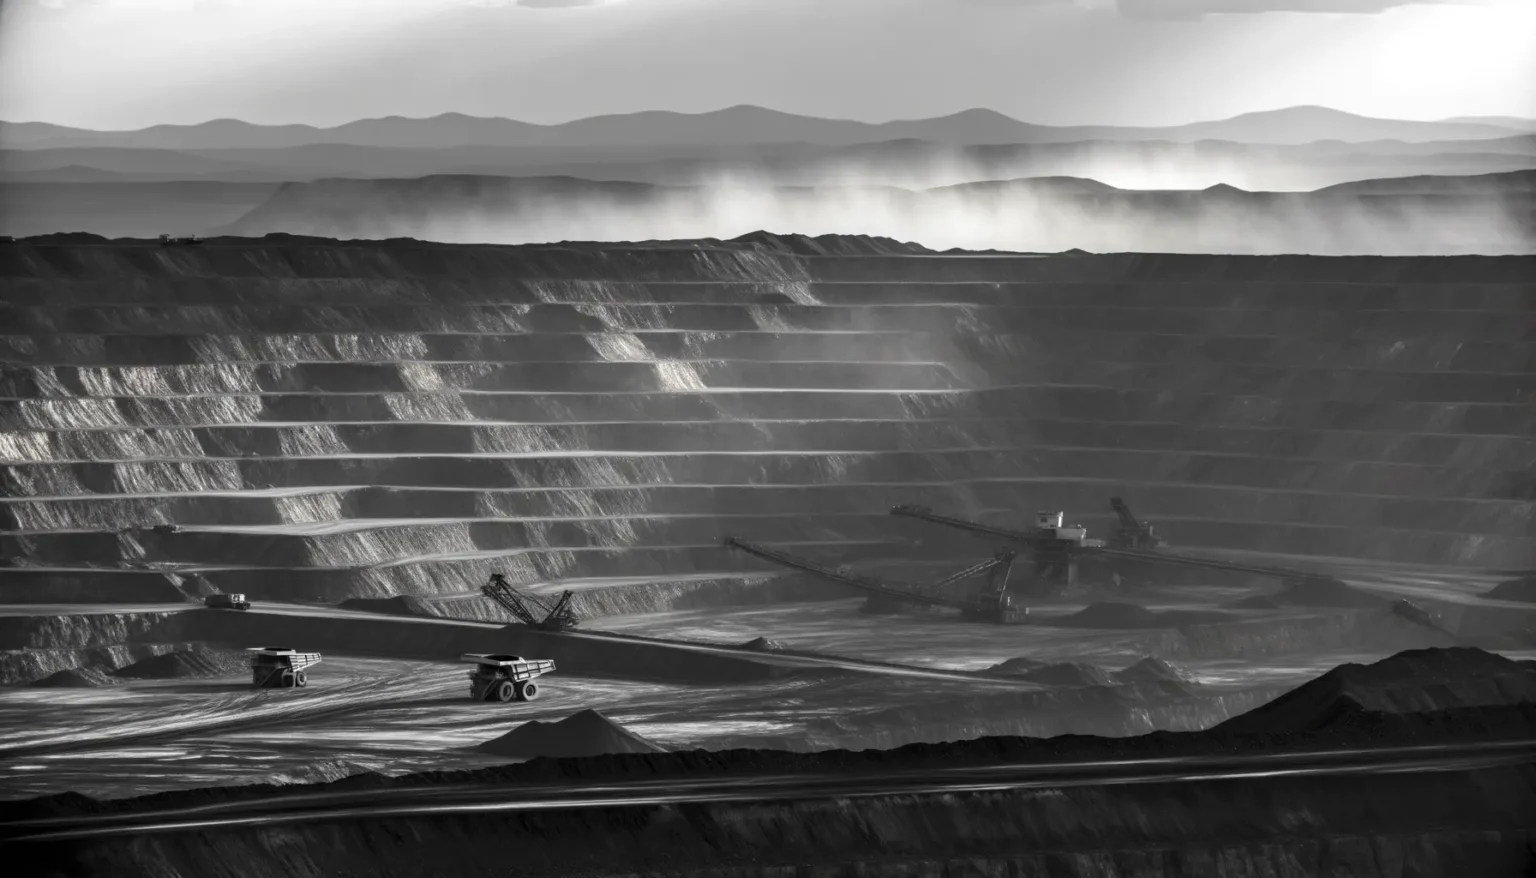 Schwarz-Weiß-Aufnahme eines Tagebaus mit verschiedenen terrassenförmigen Ebenen. Im Vordergrund sind große Bergbaufahrzeuge und Förderanlagen zu erkennen. Im Hintergrund zeichnen sich sanfte Hügelketten ab, über denen Staubwolken hängen, vermutlich verursacht durch die Bergbauaktivitäten.